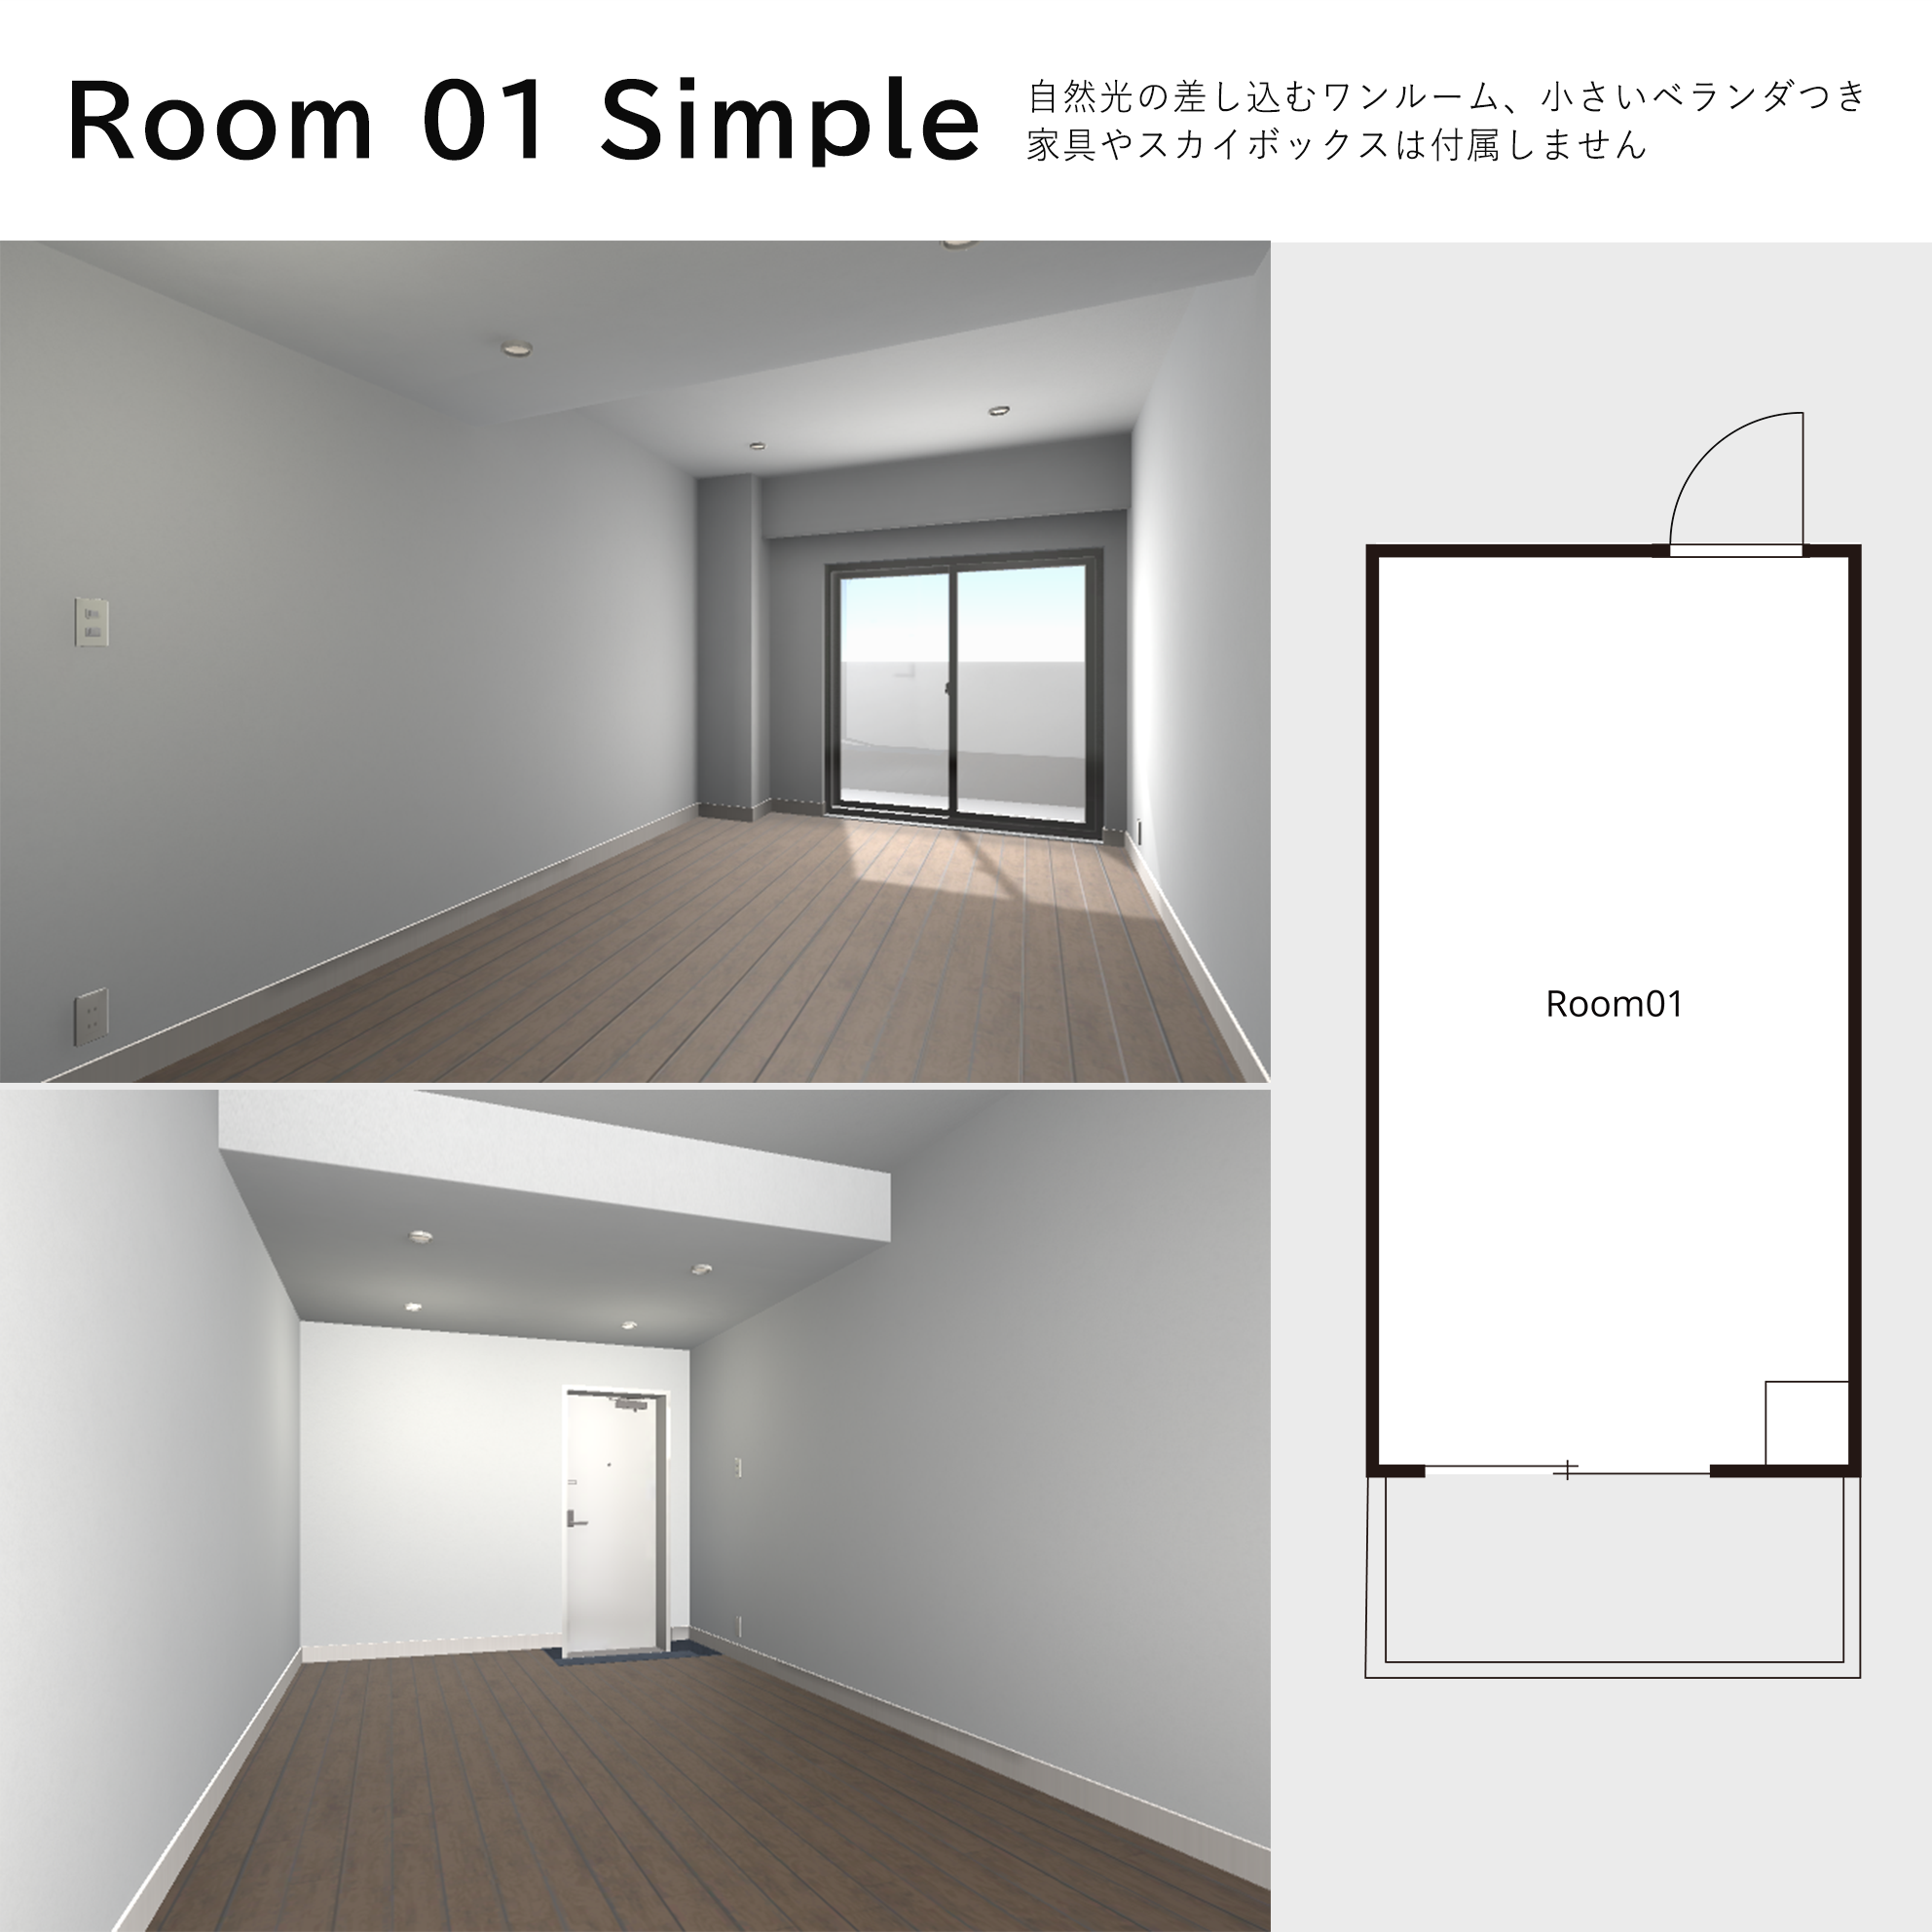 Room 01 Siｍple